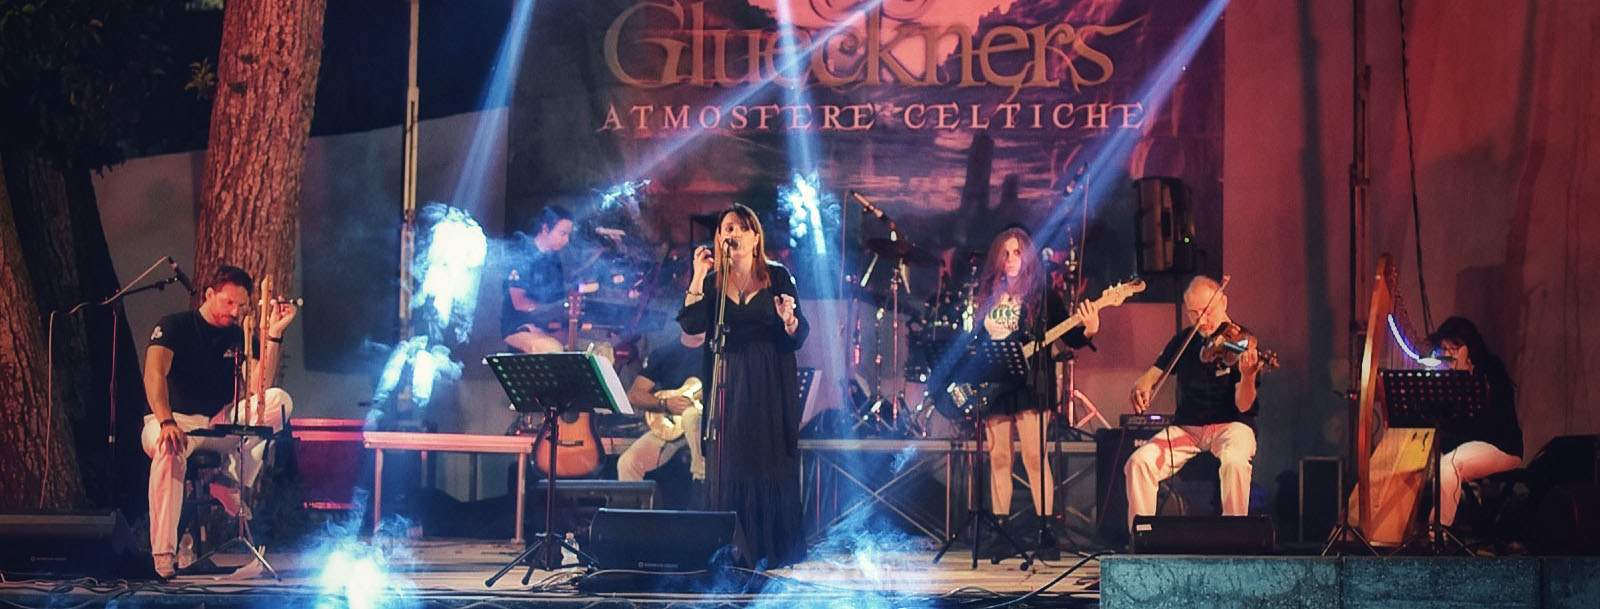 Glueckners a Sanremo Rock e Trend 36^ edizione